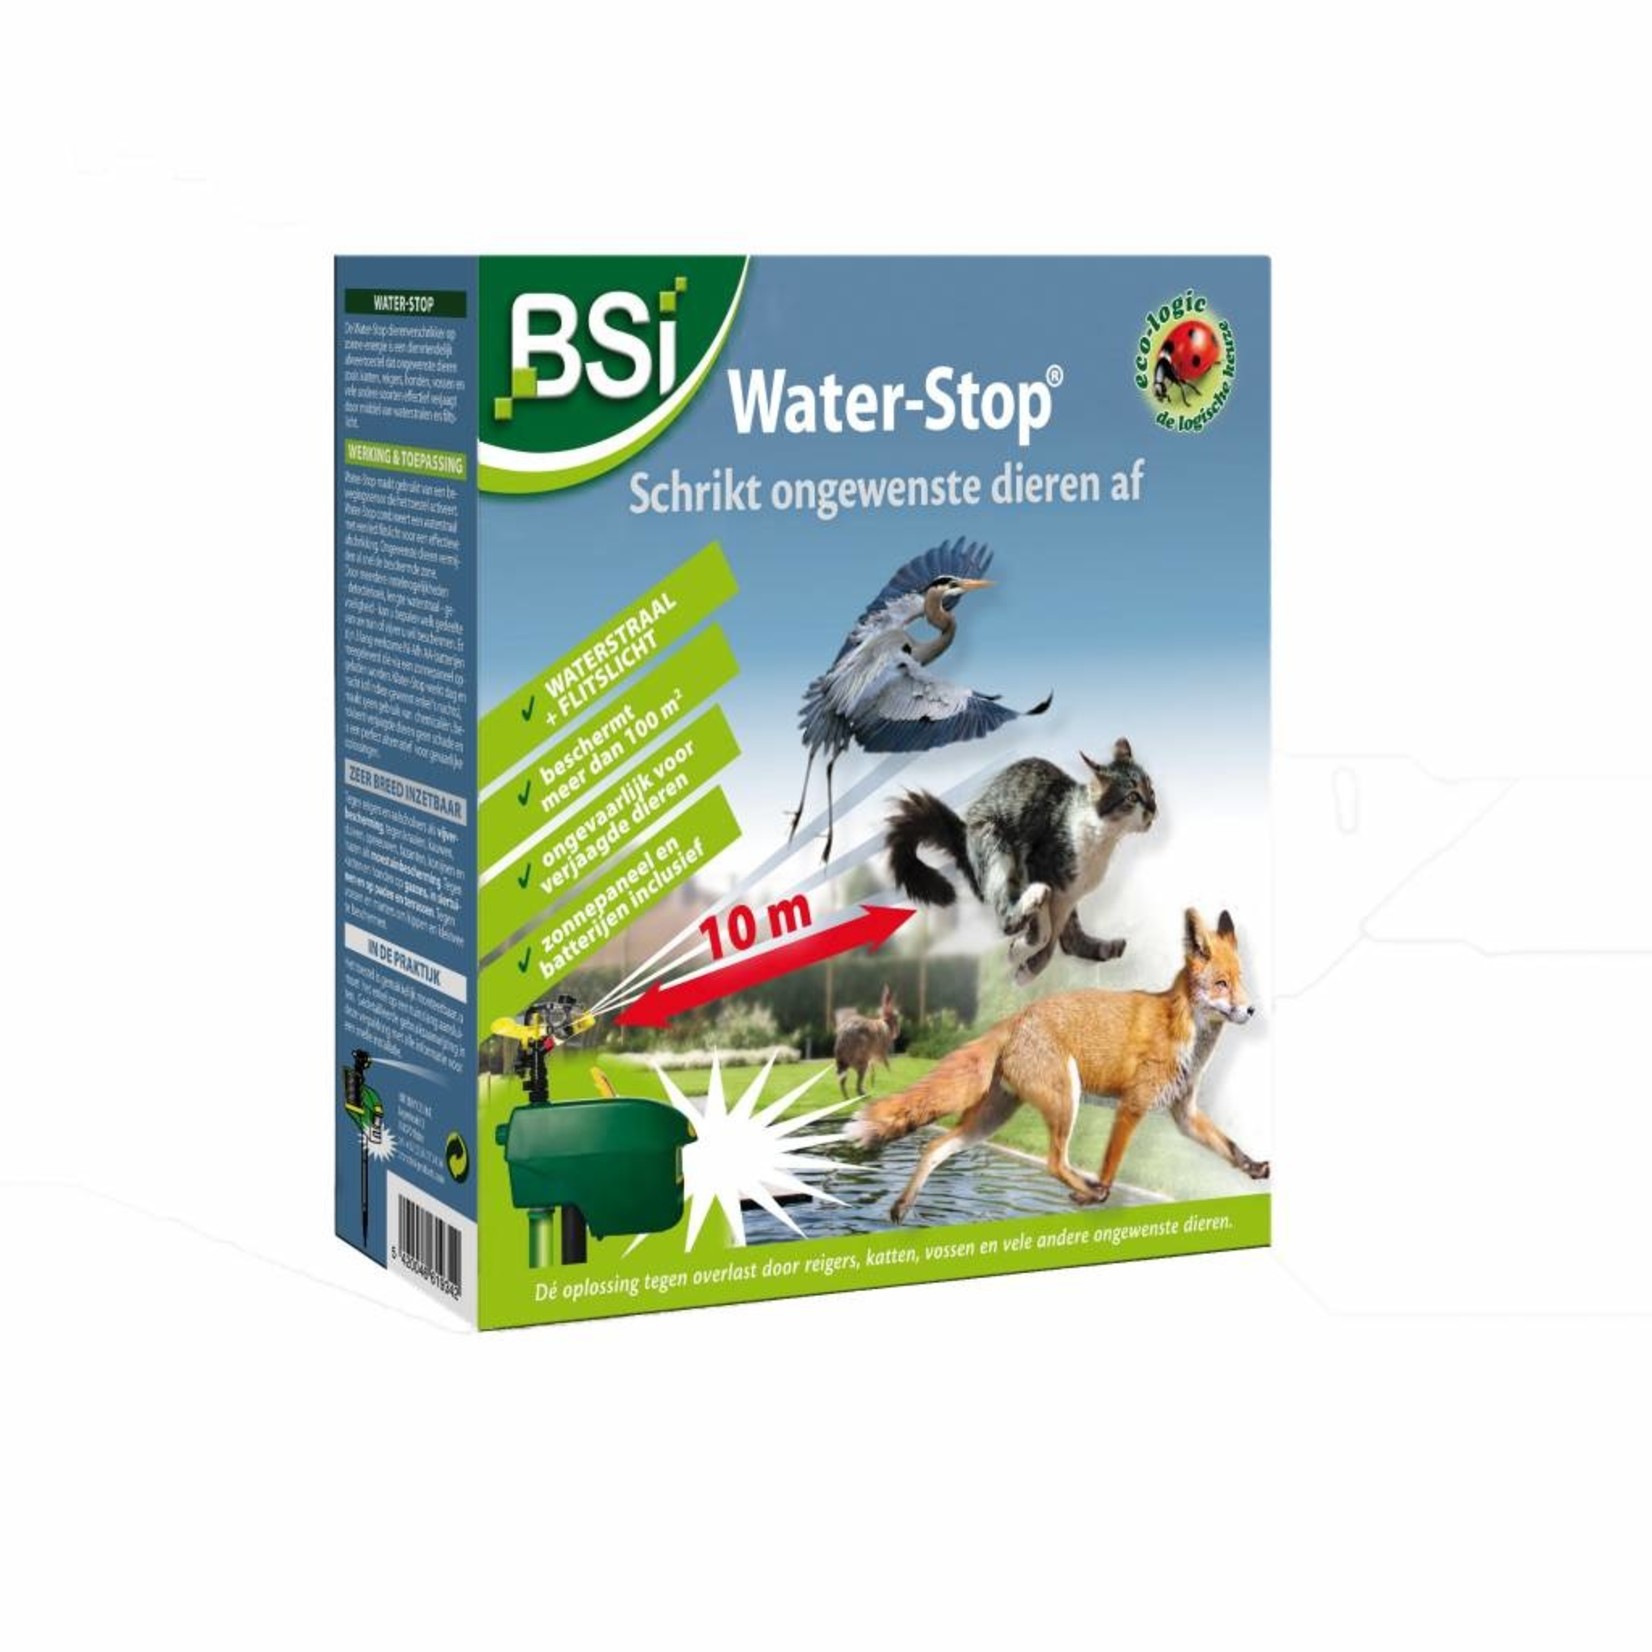 BSi Water-Stop met waterstraal en flitslicht tegen ongewenste dieren